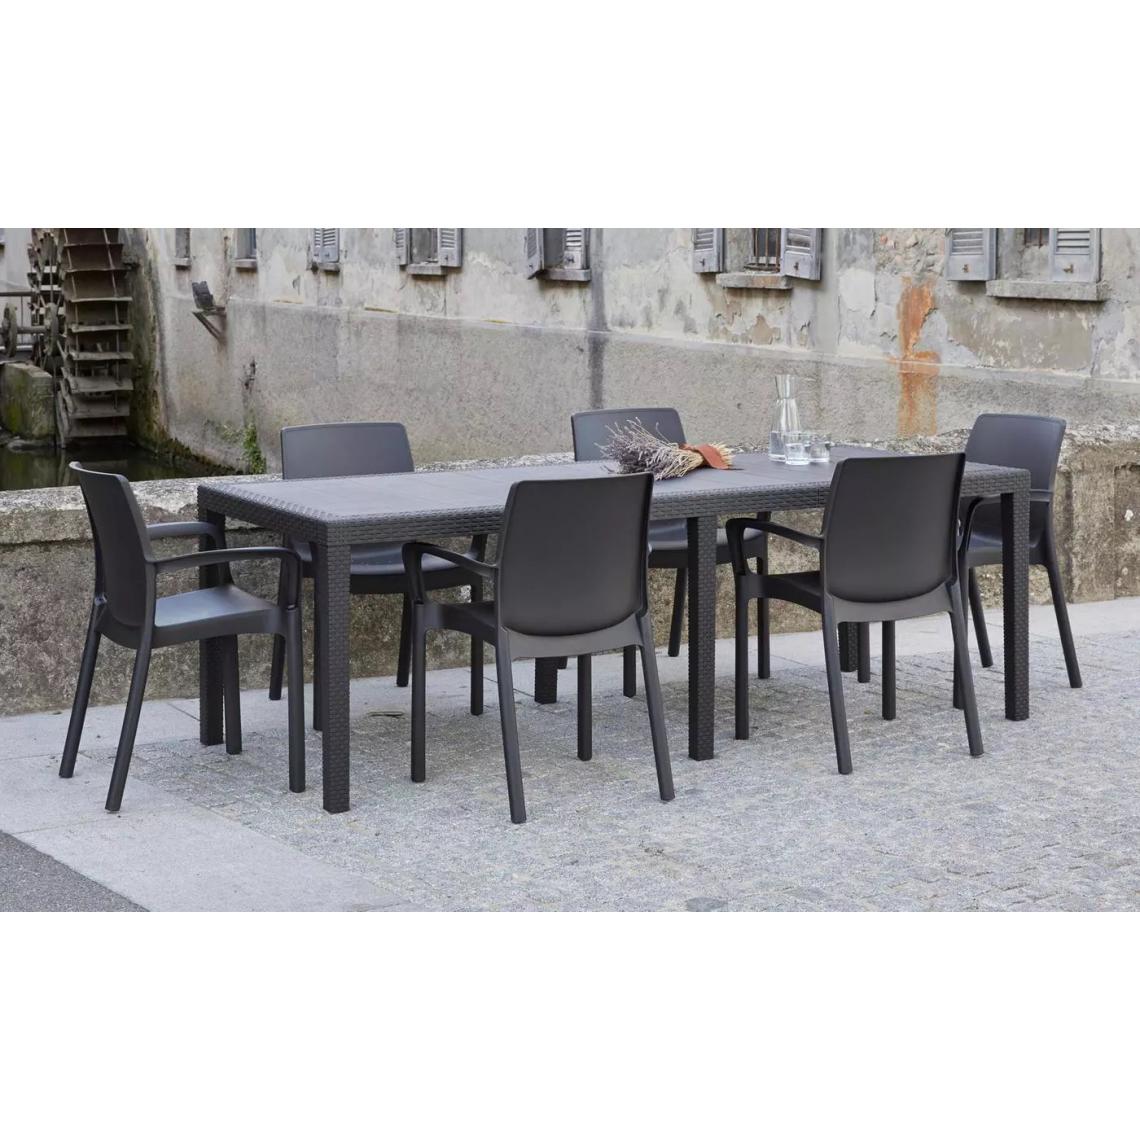 Alter - Table d'extérieur rectangulaire extensible, Made in Italy, couleur anthracite, Dimensions 150 x 72 x 90 cm (extensible jusqu'à 220 cm) - Tables à manger